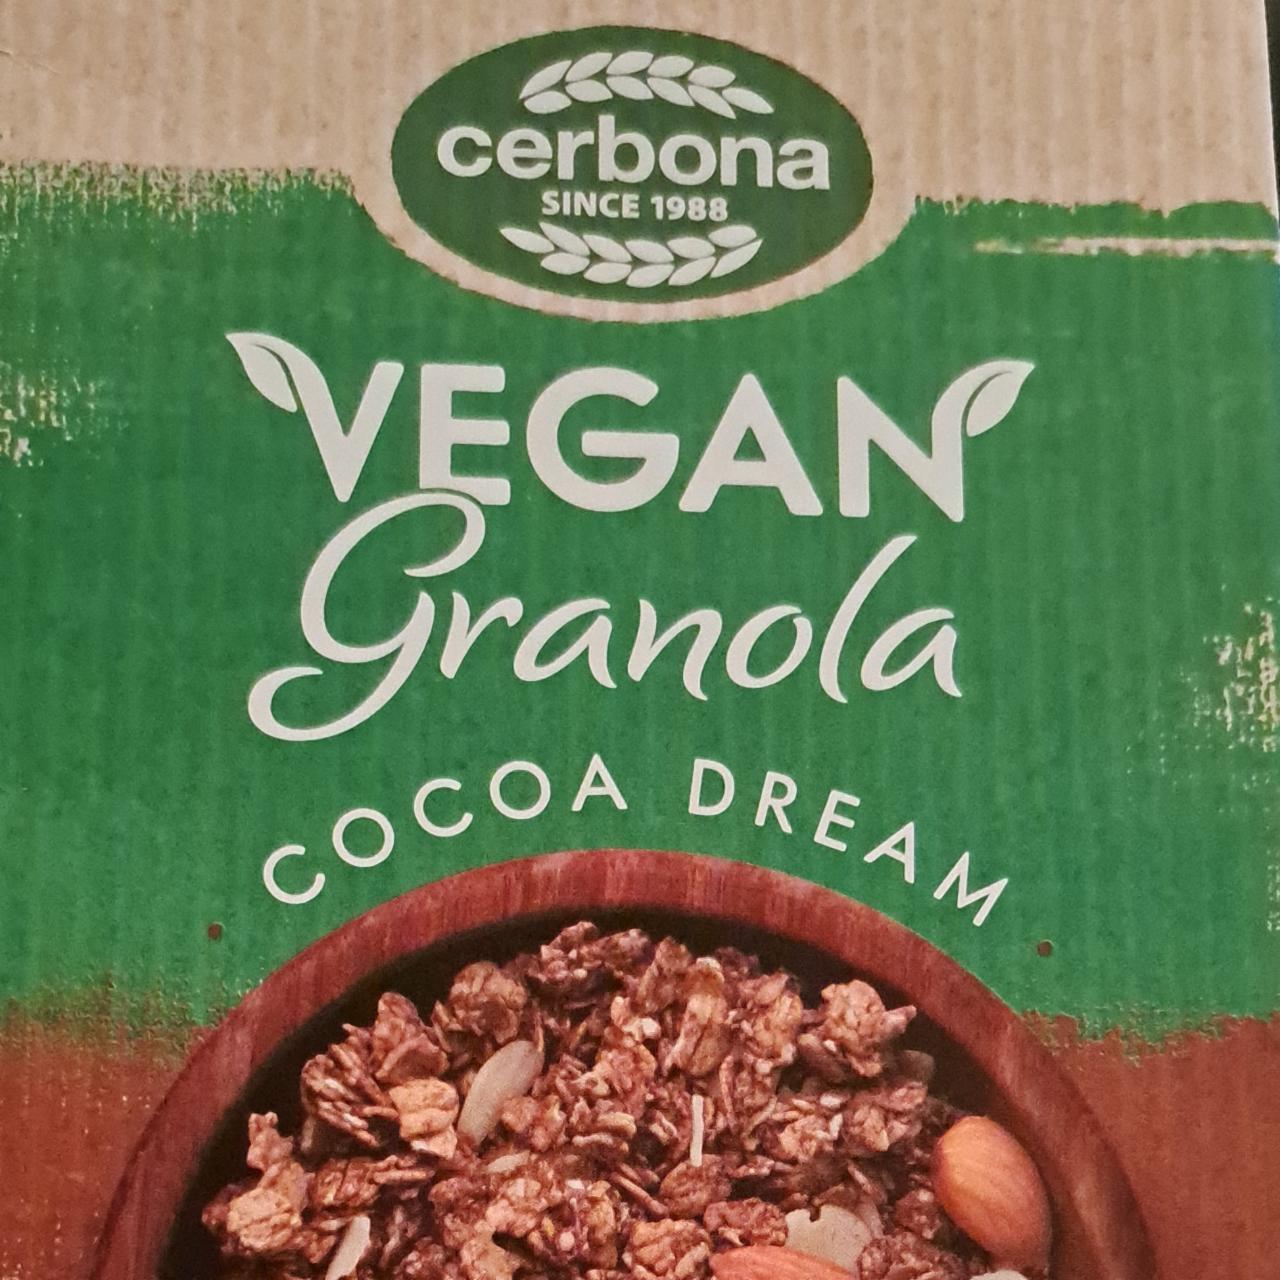 Képek - Vegan granola Cocoa dream Cerbona